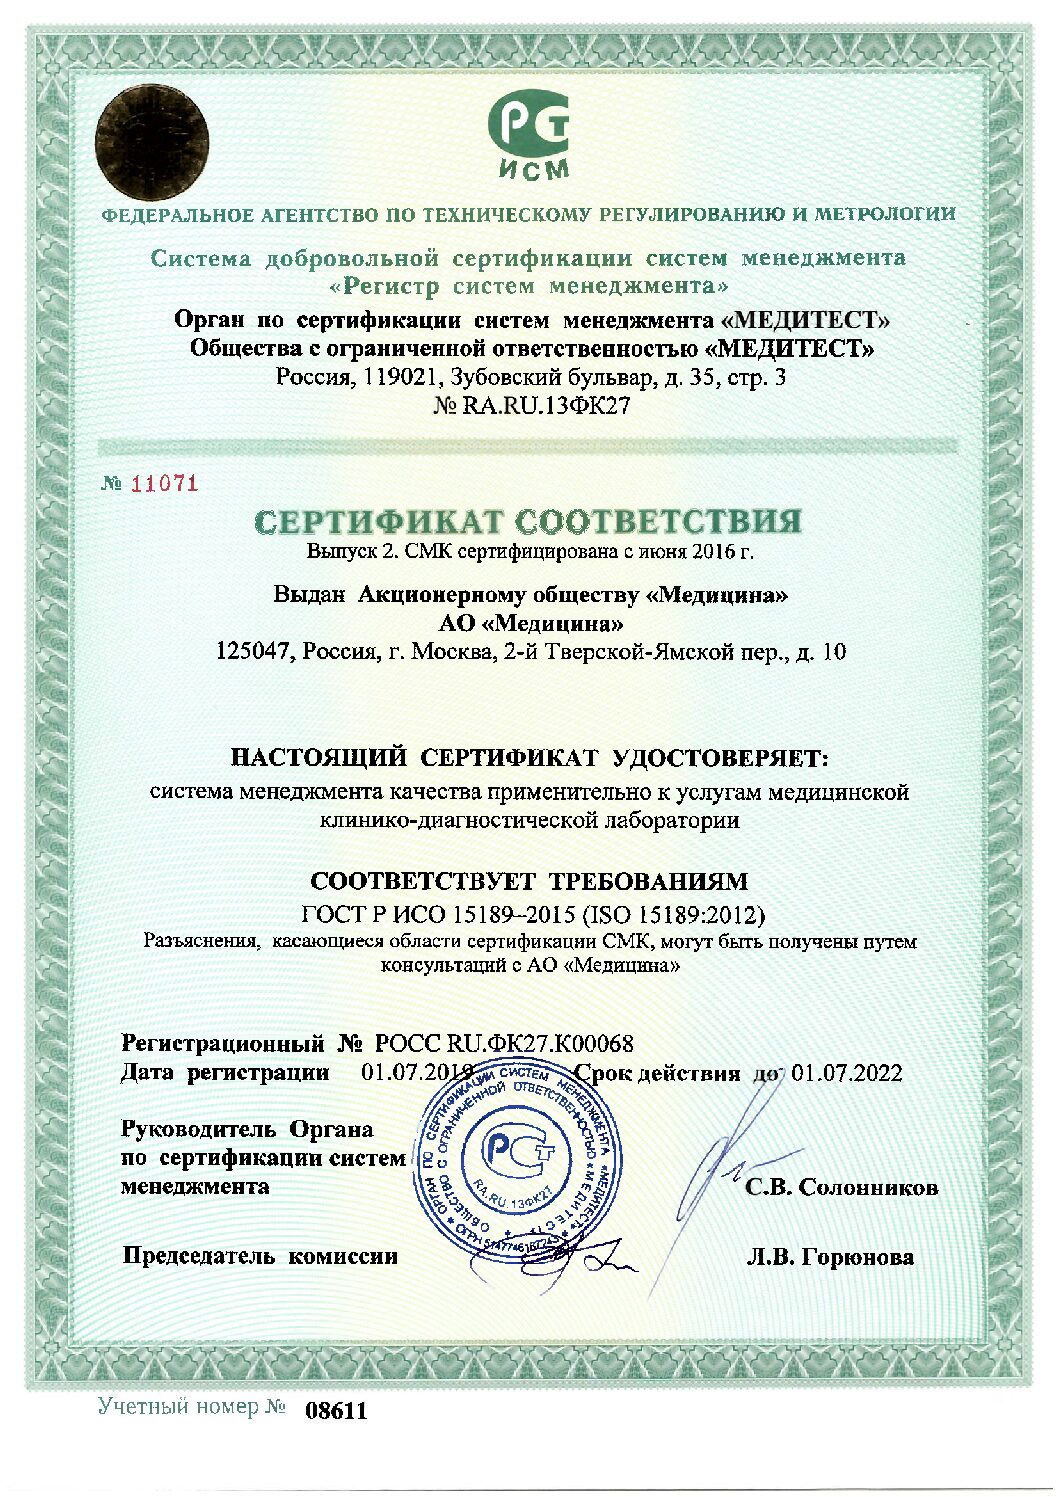 Сертификат соответствия органа по сертификации систем менеджмента «Медитест» общества с ограниченной ответственностью «Медитест»